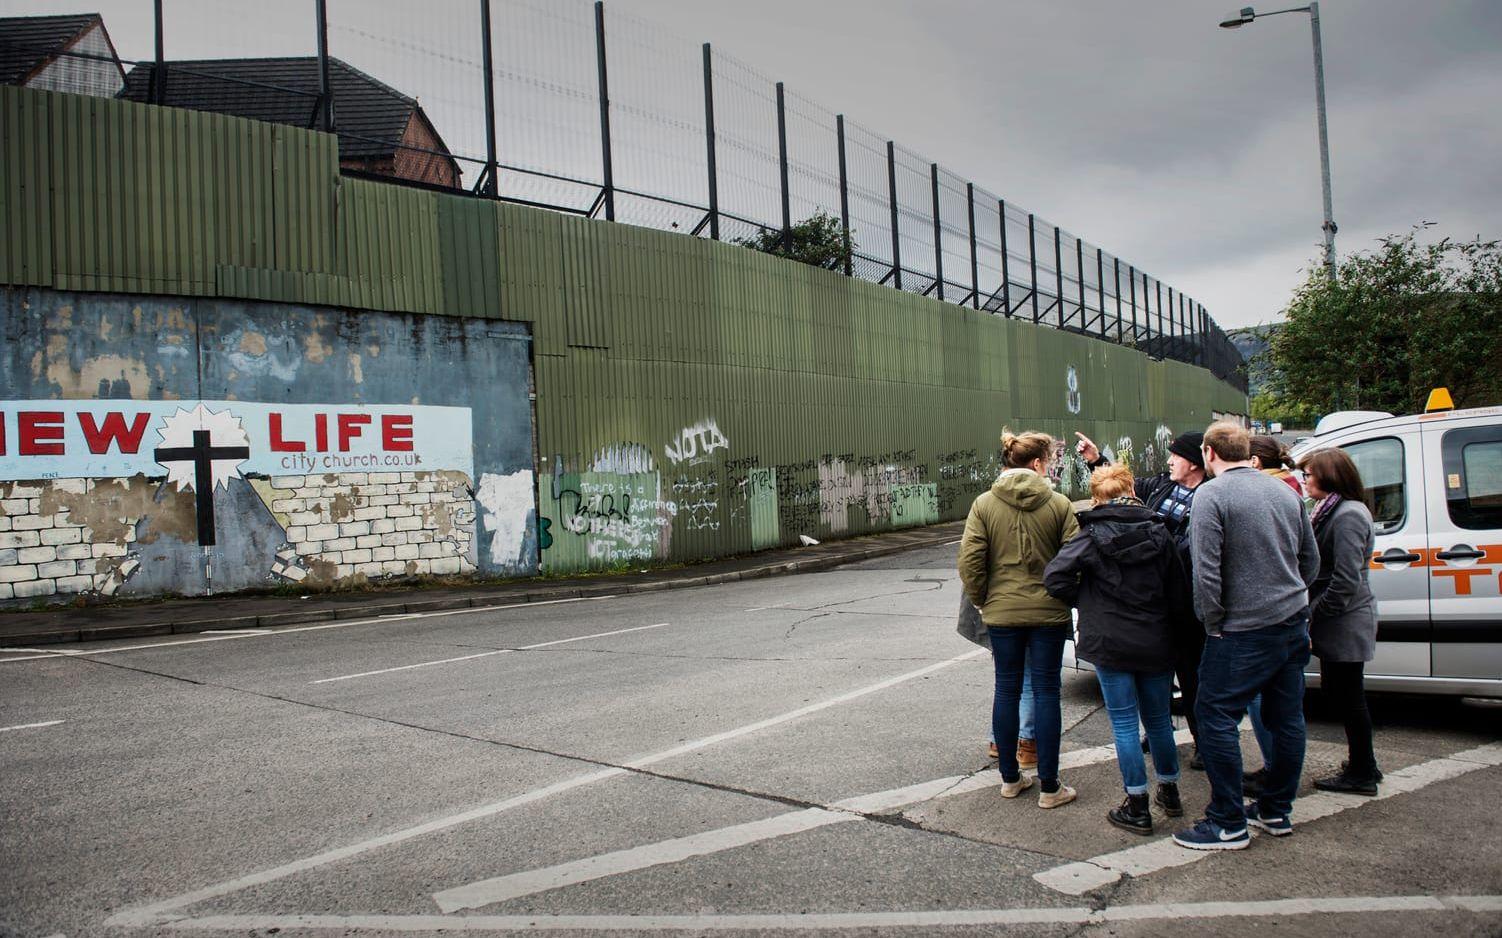 Murens om skiljer katoliker och protestanter i Belfast som turistmål.